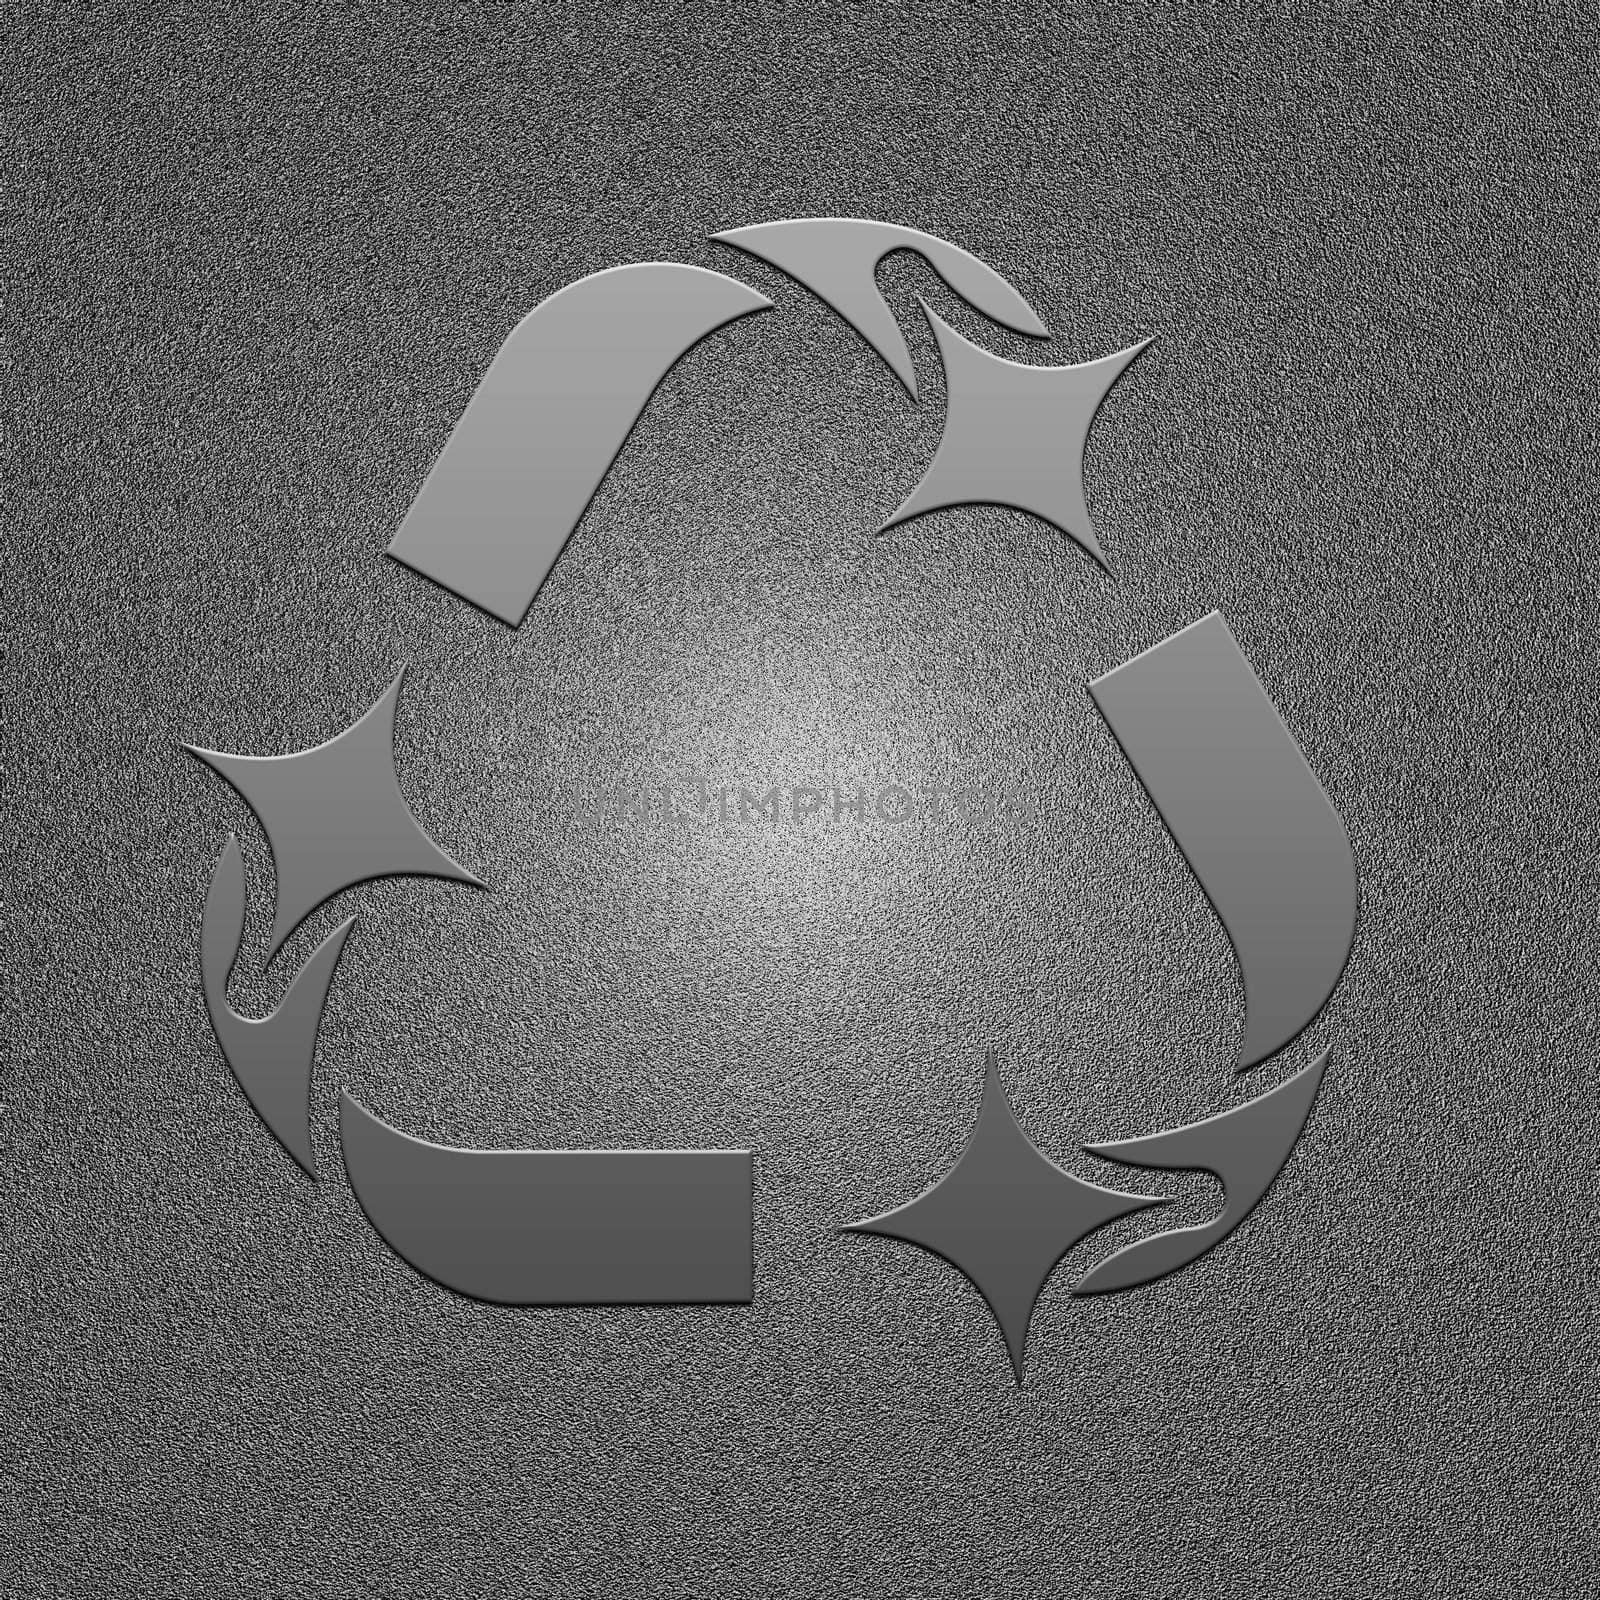 Illustration of ecology metal symbol. High resolution image. 3d illustration.